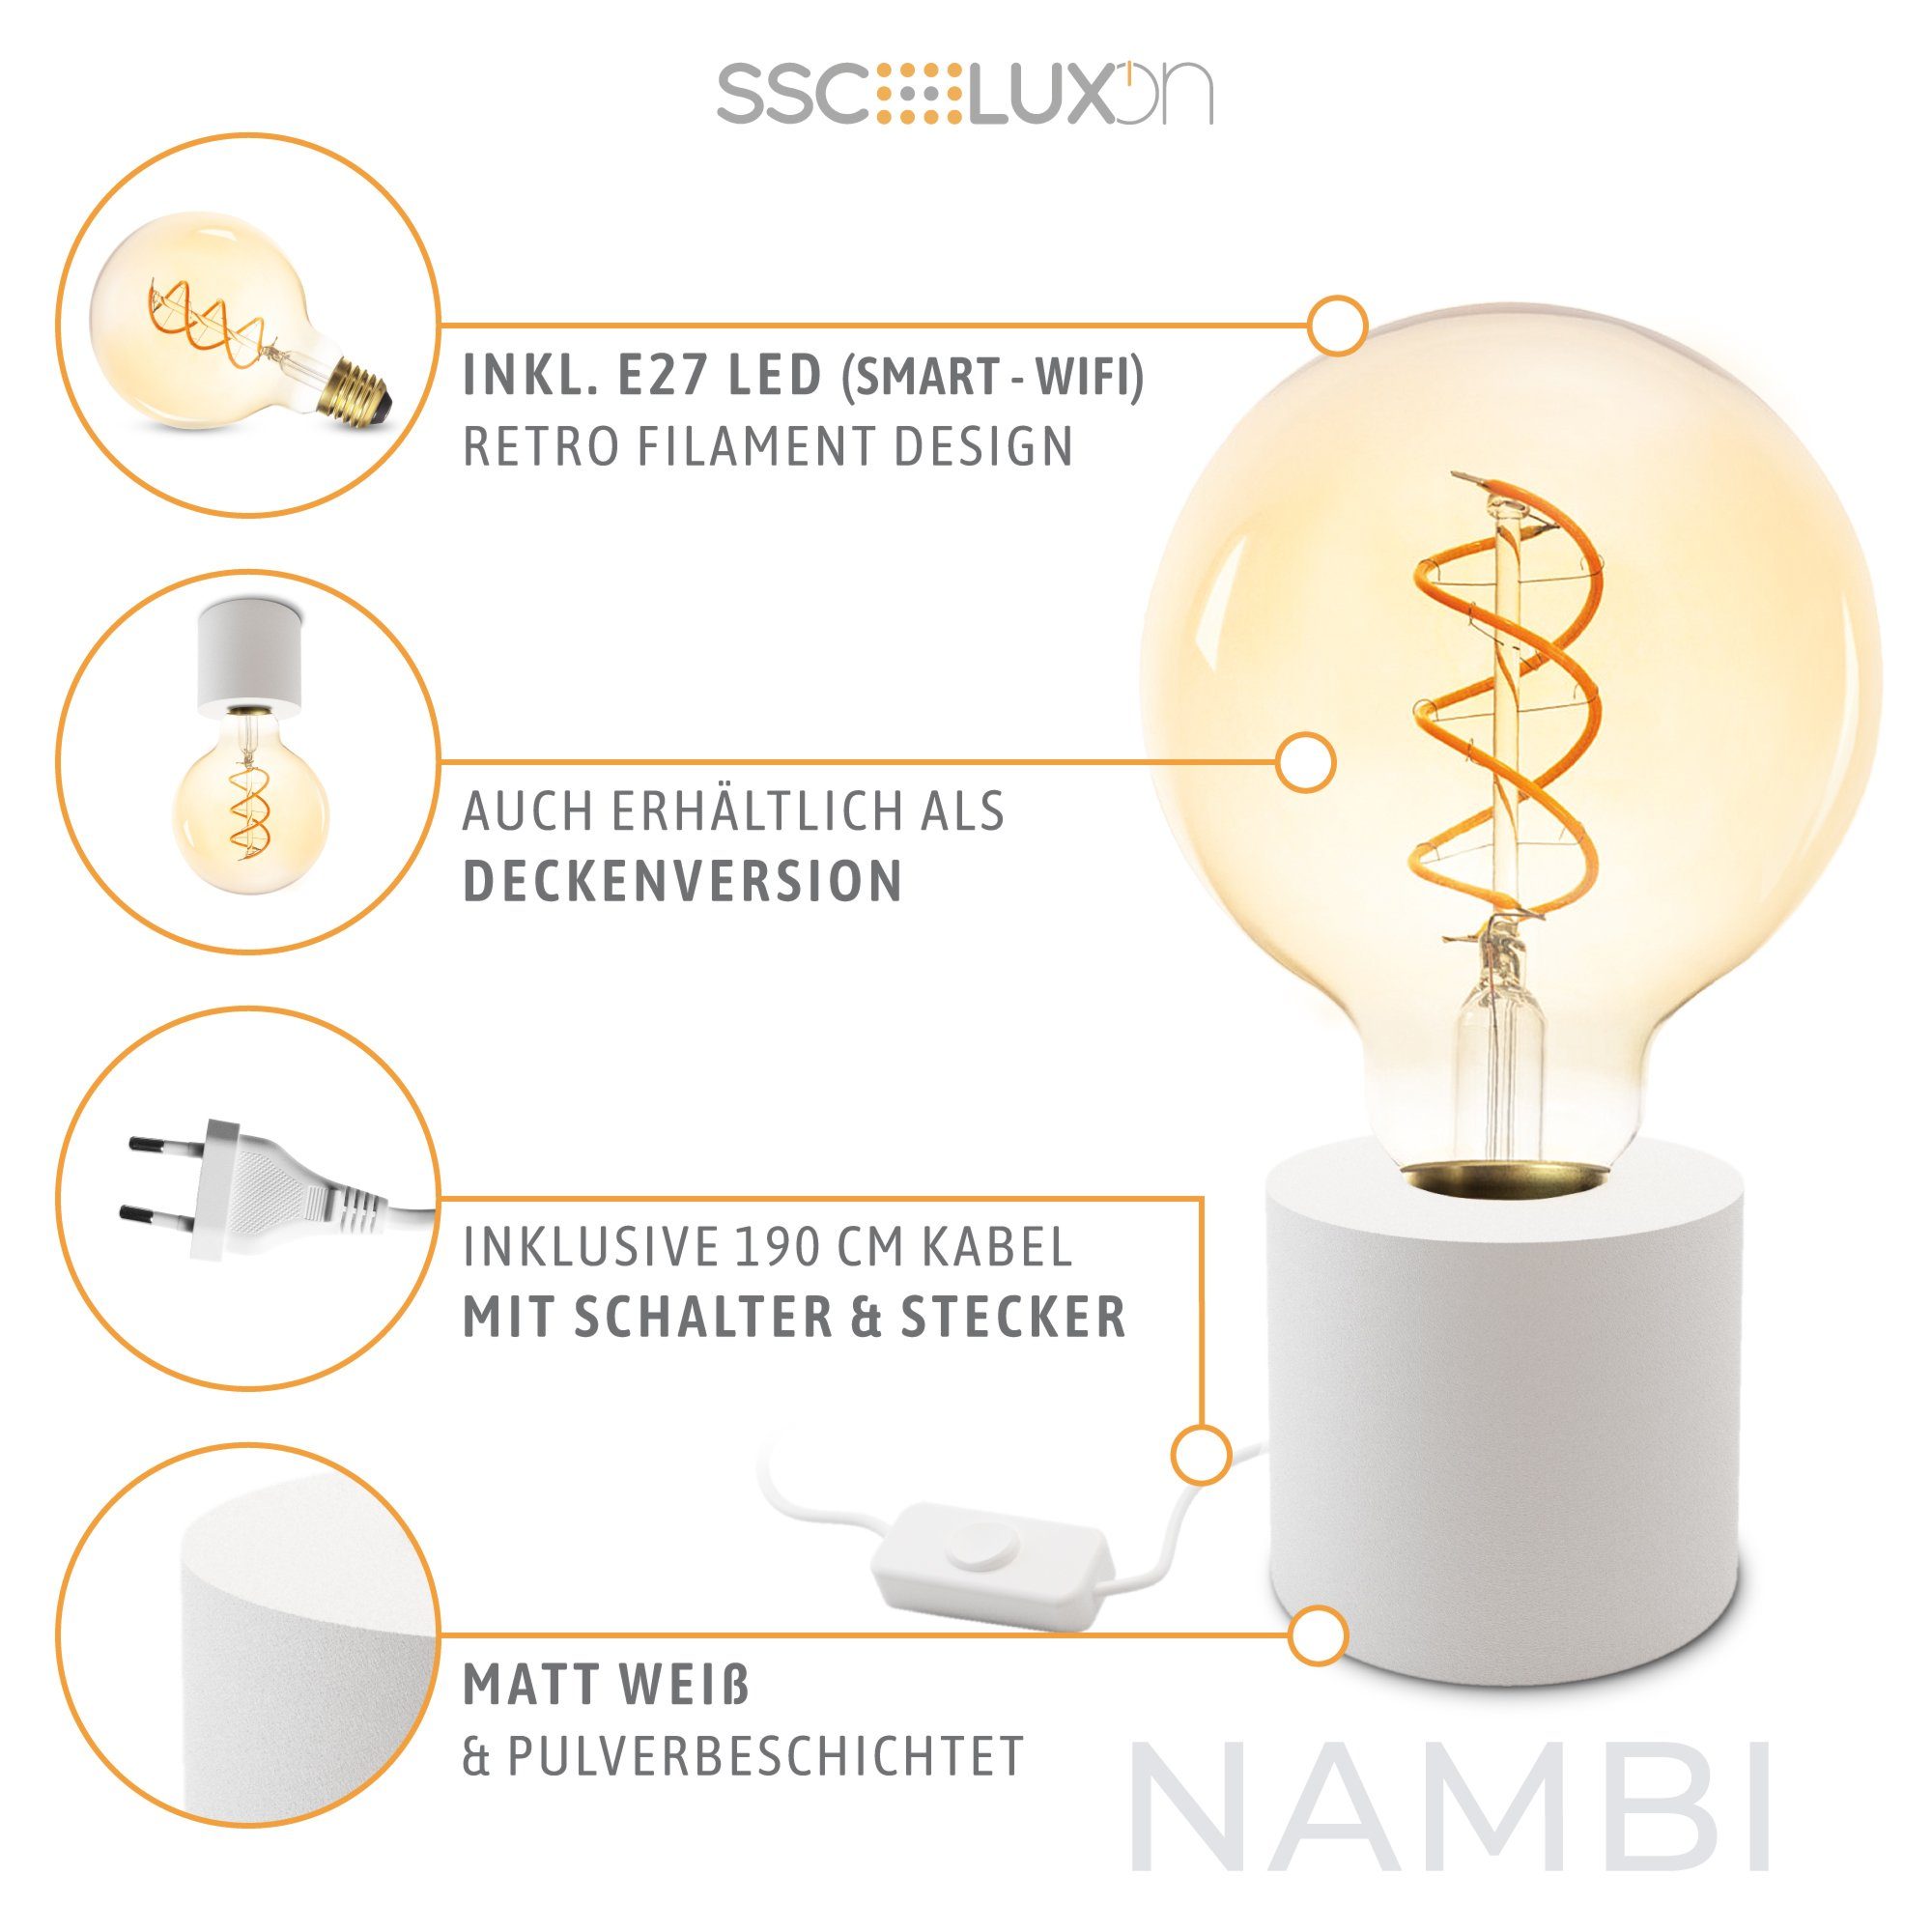 LED, LED Warmweiß mit Stecker Bilderleuchte Filament NAMBI & rund SSC-LUXon weiss mit Tischleuchte Kabel